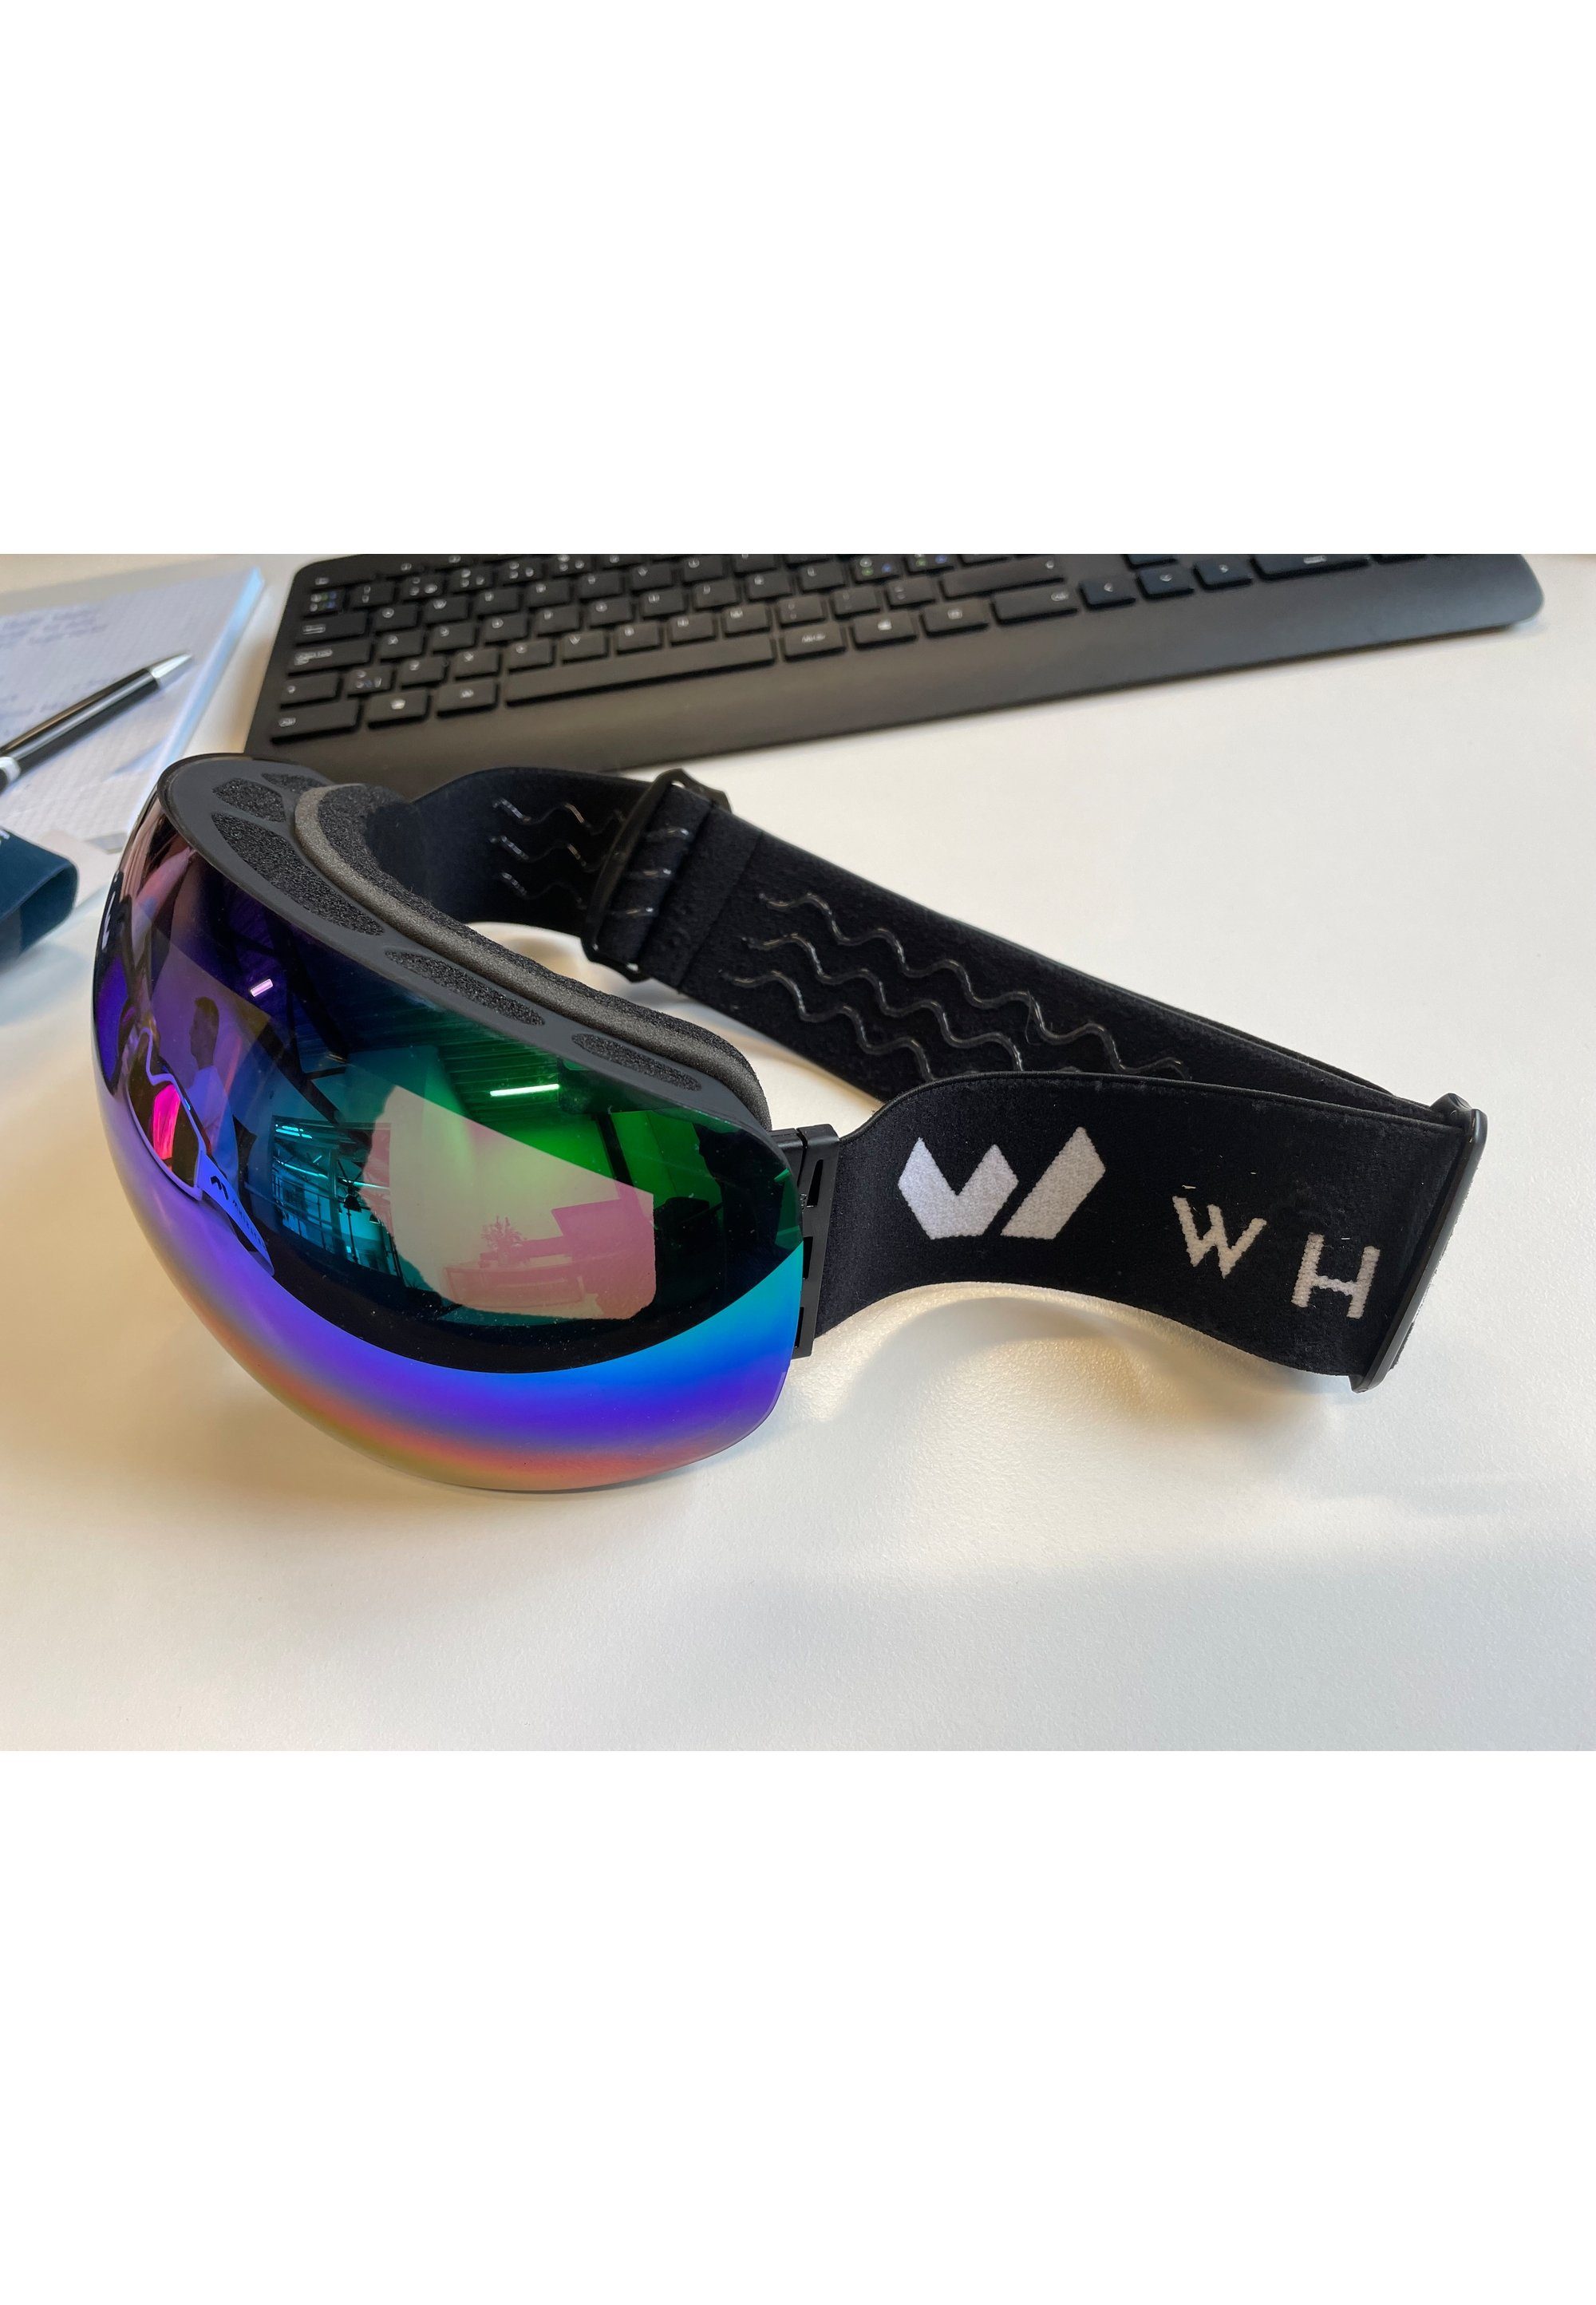 Skibrille schwarz-blau WHISTLER praktischer WS6100, Anti-Fog-Beschichtung mit